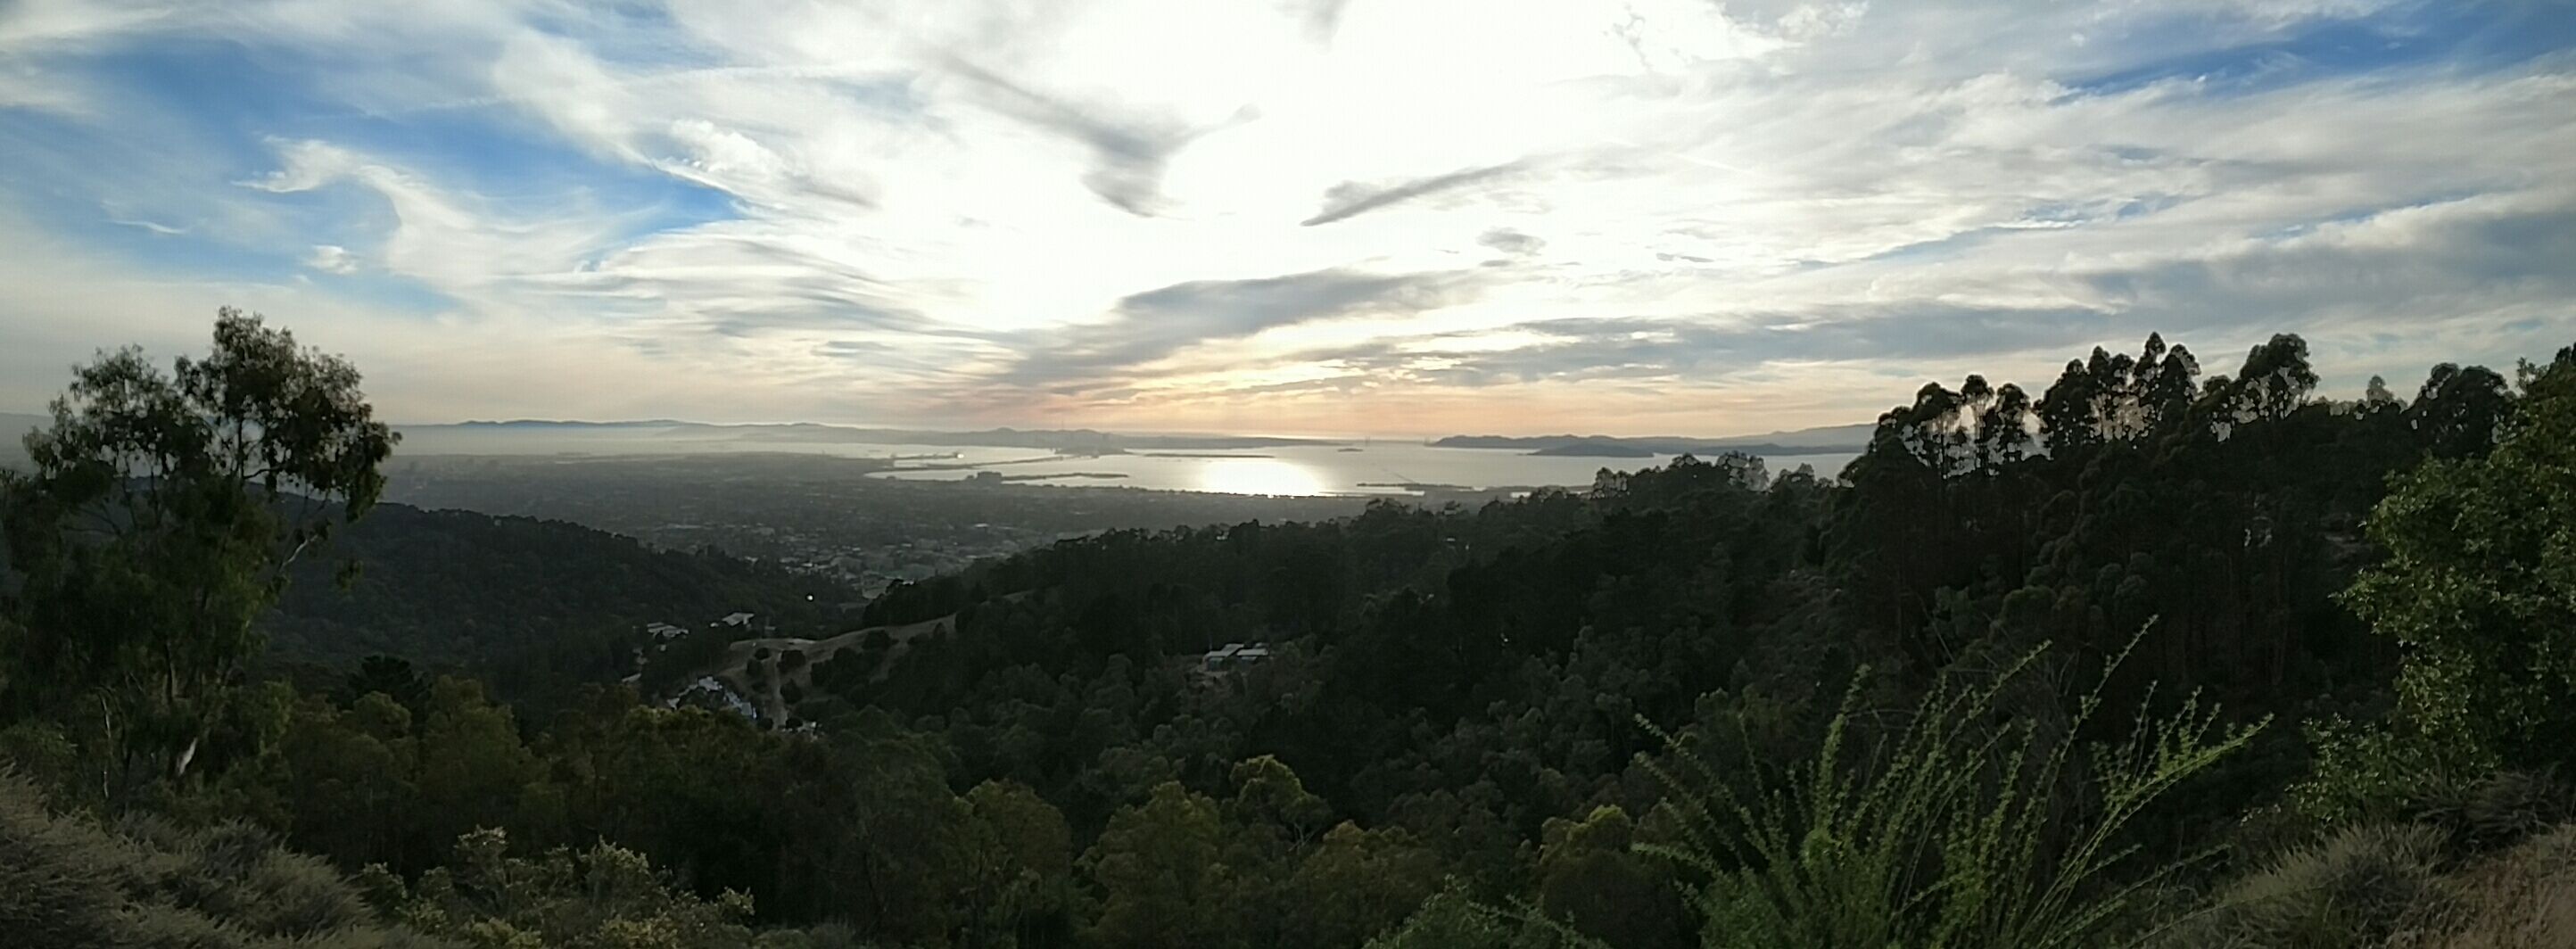 Oakland and San Francisco at sunset